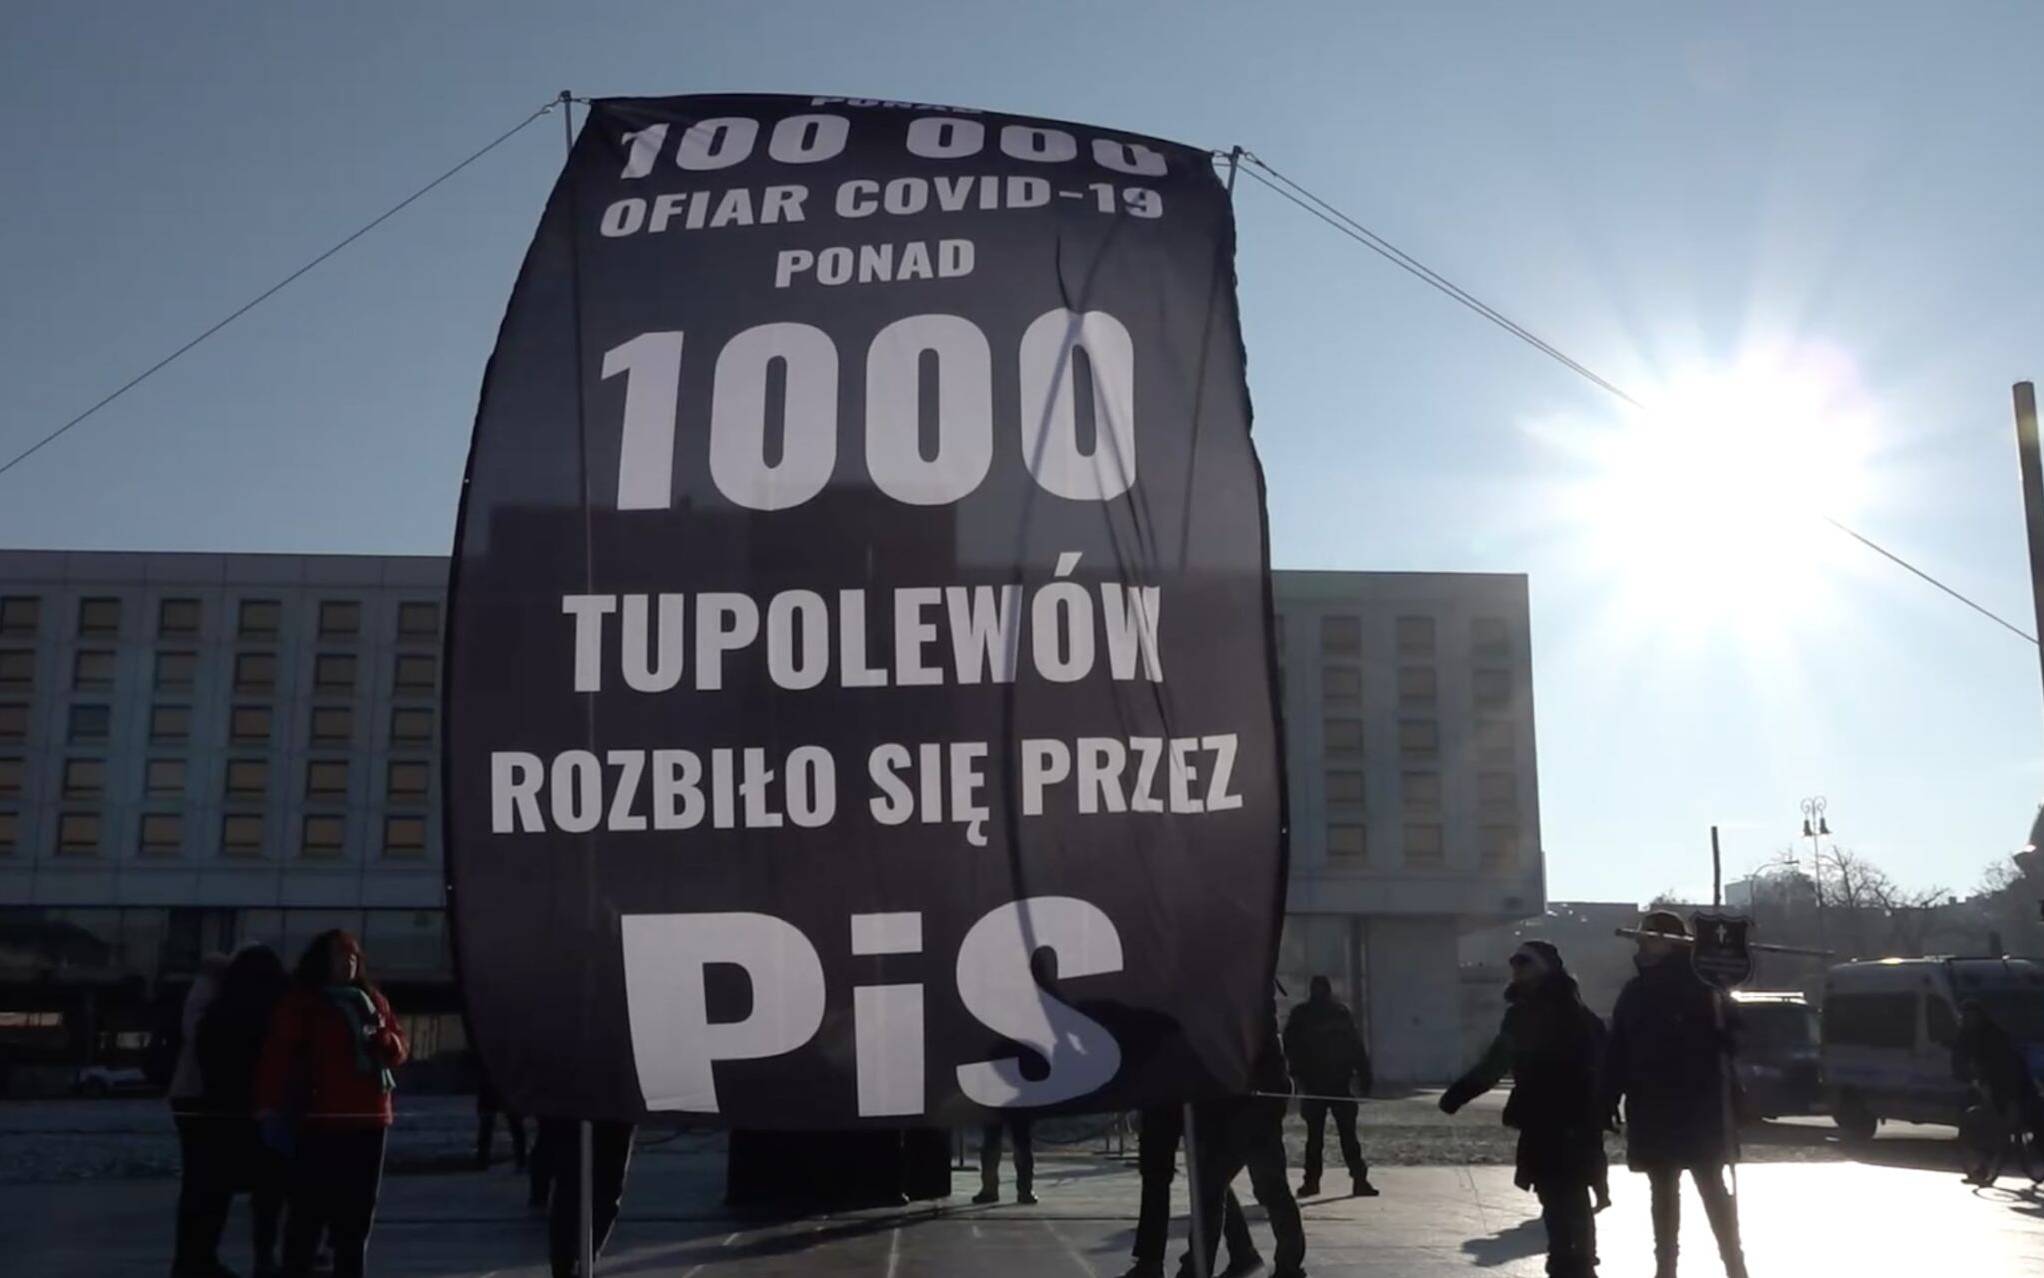 Grafika do artykułu 1000 tupolewów rozbiło się przez PiS. Akcja Lotnej Brygady Opozycji